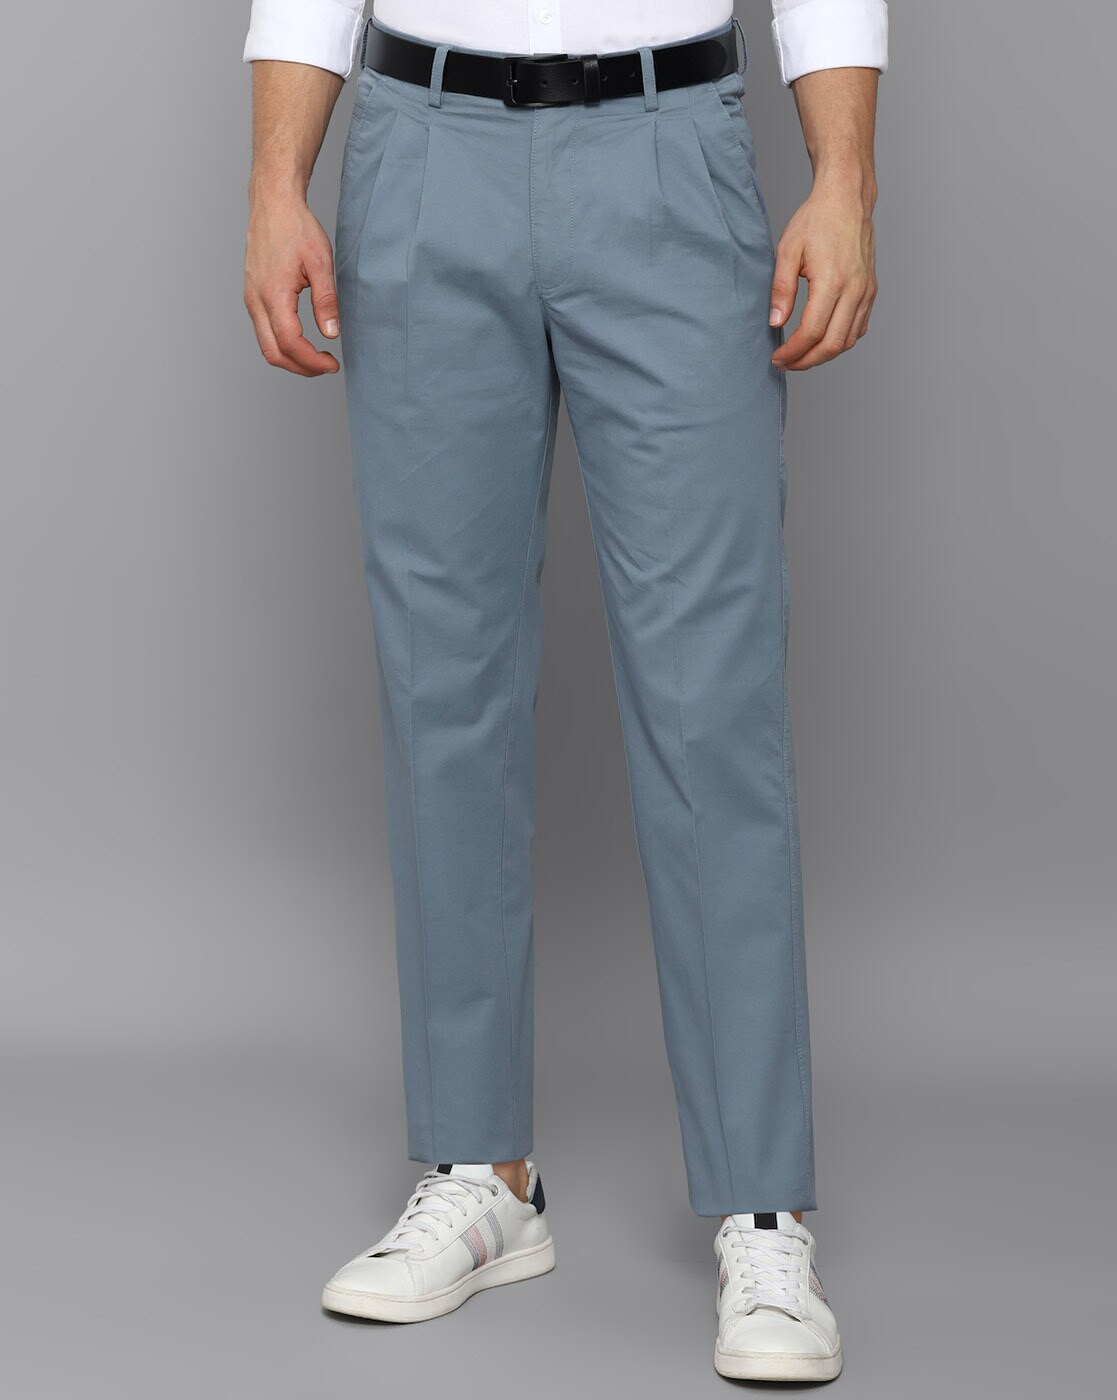 Buy Cotton Trousers Men & Trouser Pants For Men - Apella